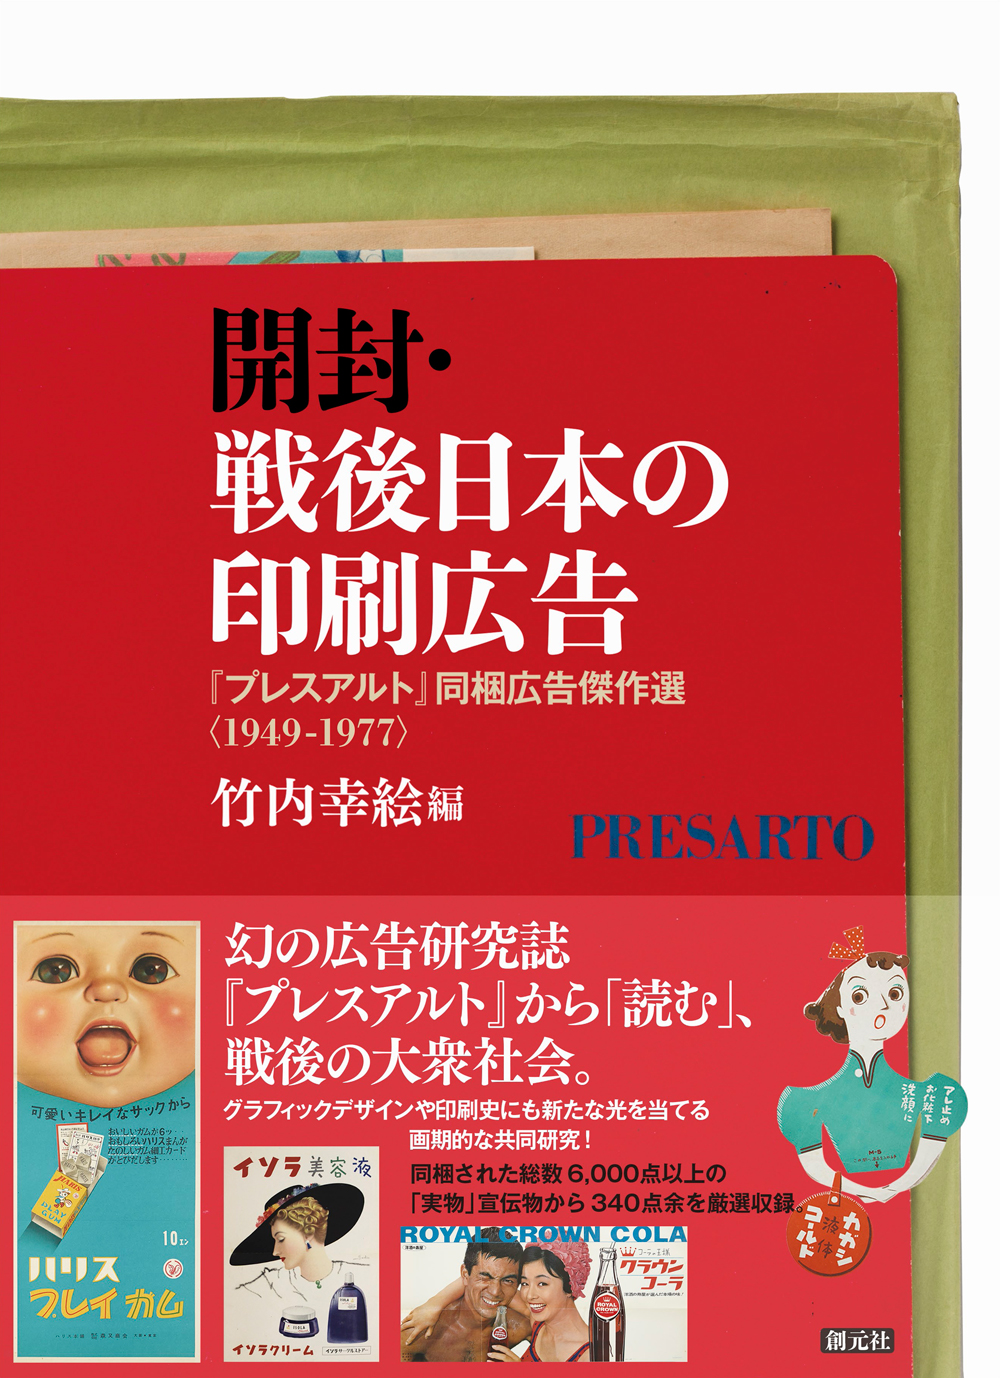 『開封・戦後日本の印刷広告: 『プレスアルト』同梱広告傑作選〈1949-1977〉』